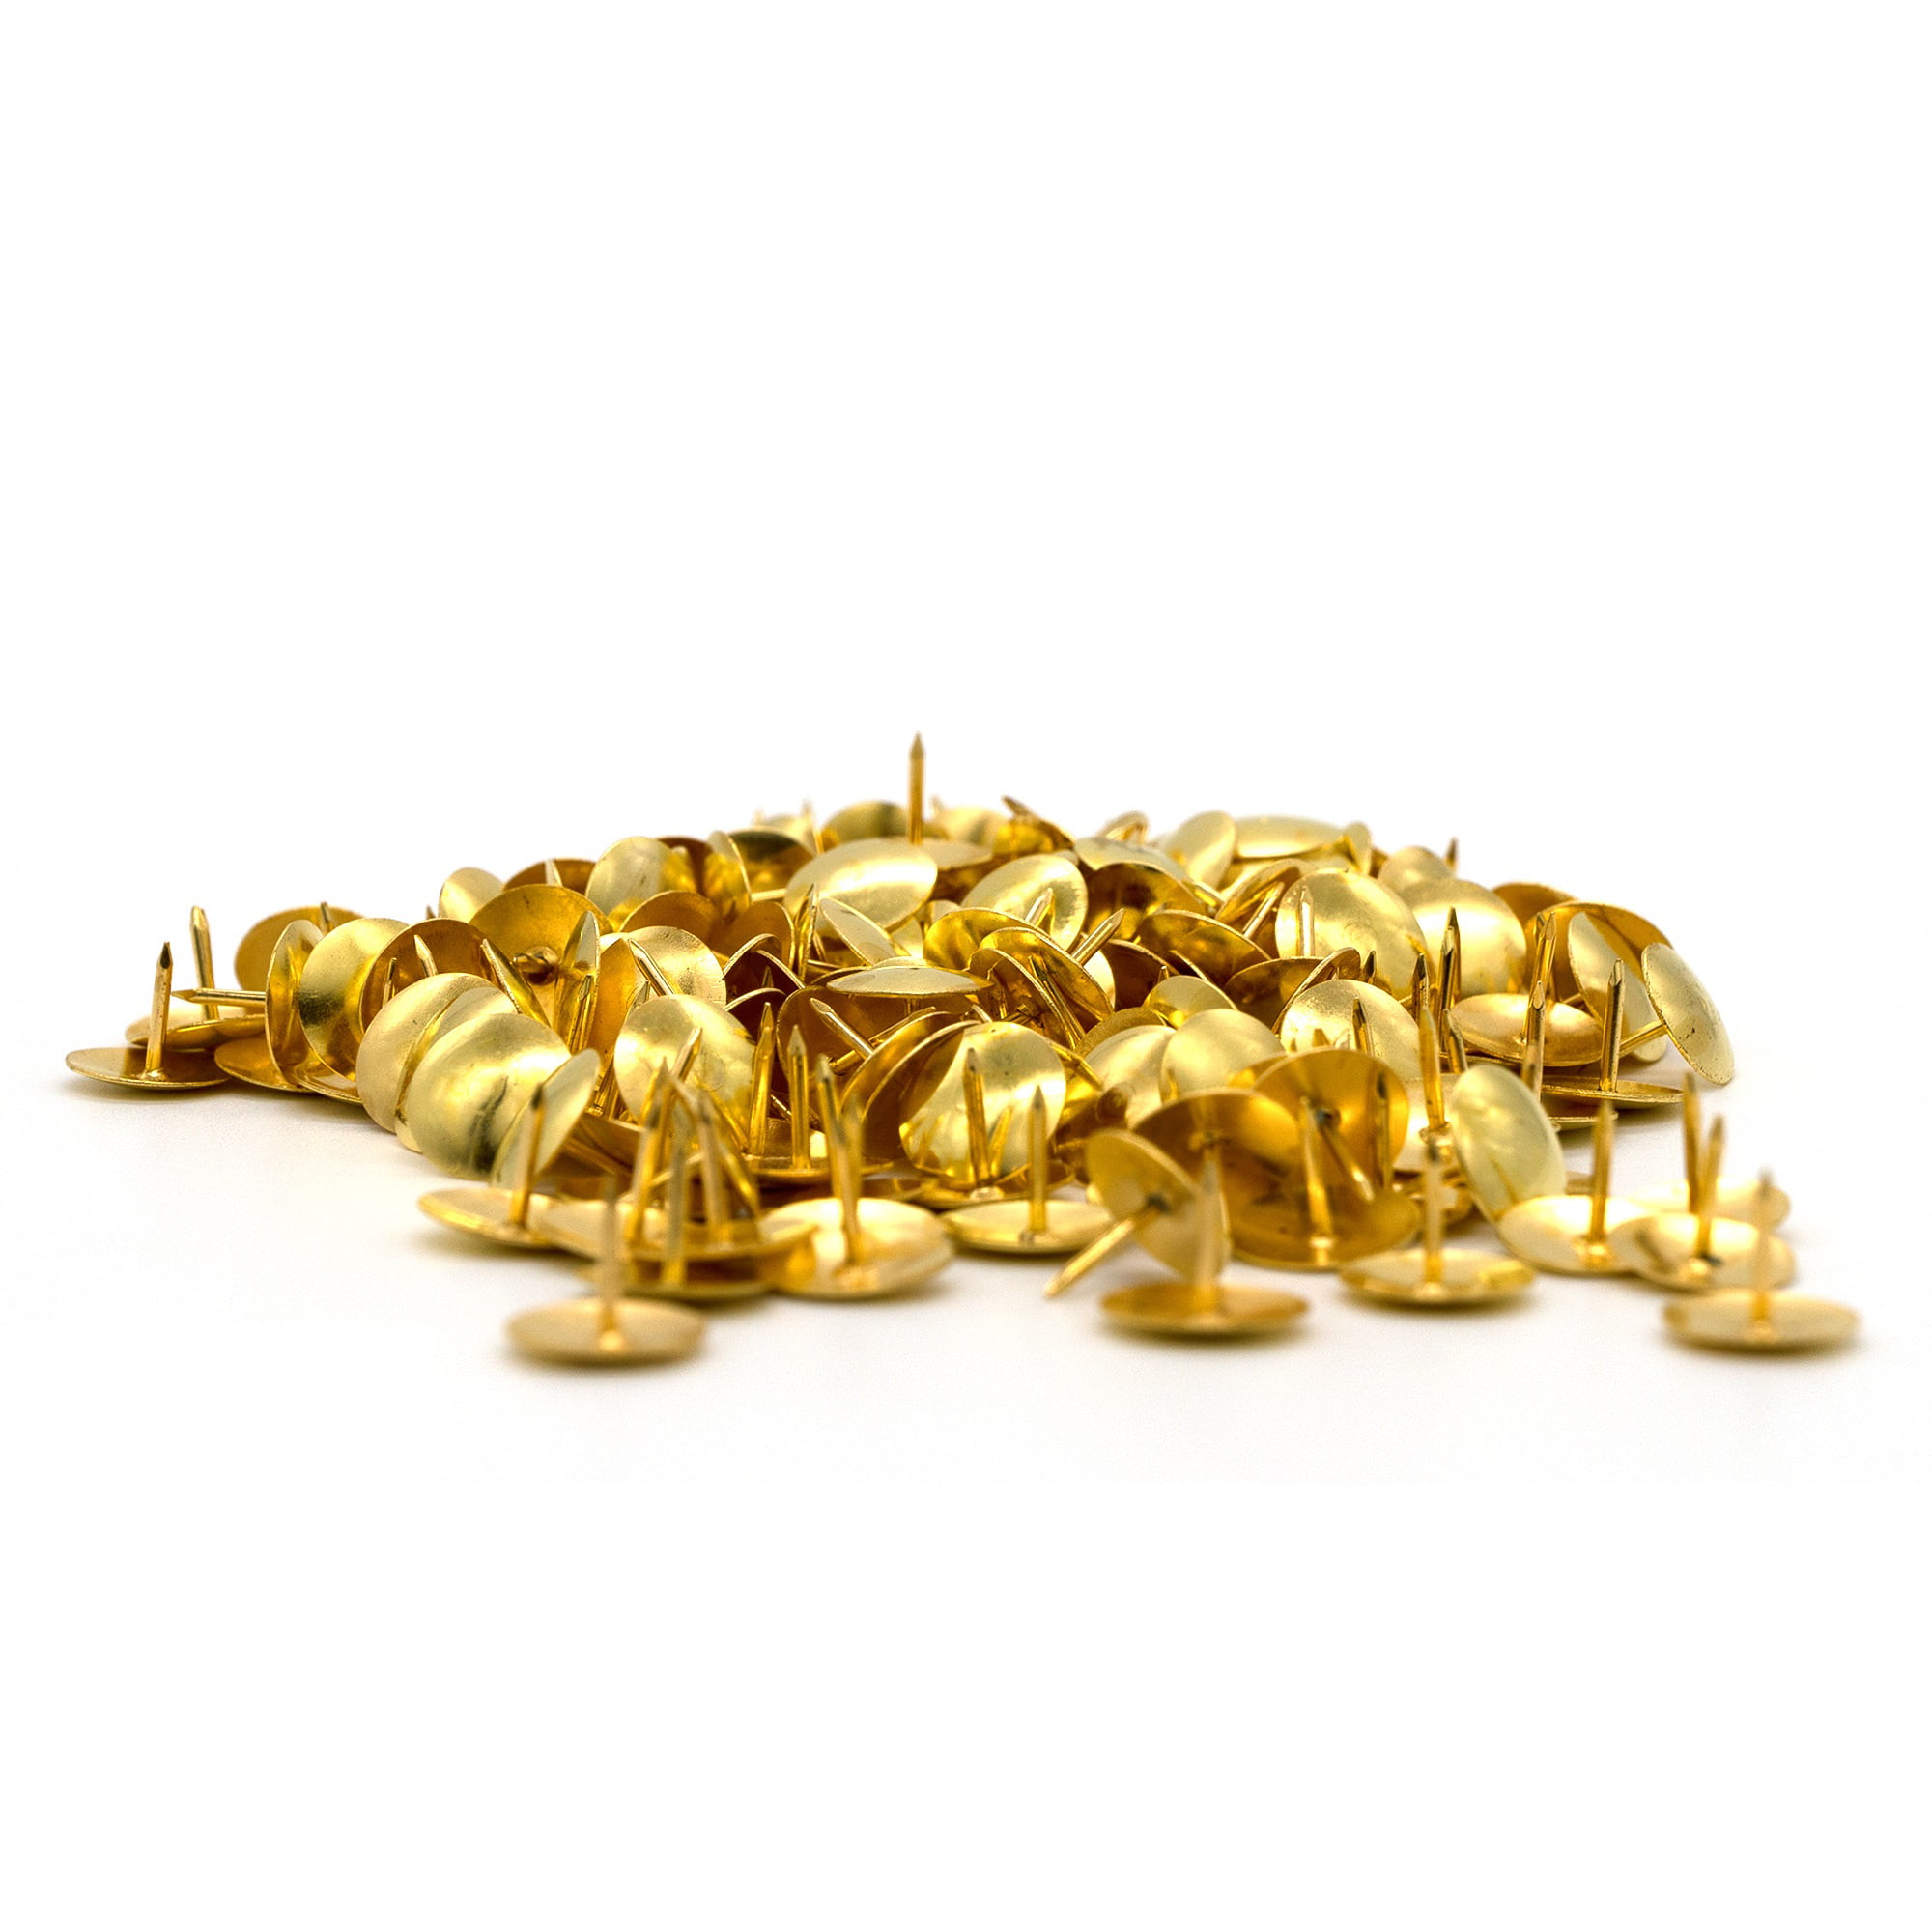 BAZIC Push Pins Gold Metallic Flat Head Steel Thumb Tacks (200